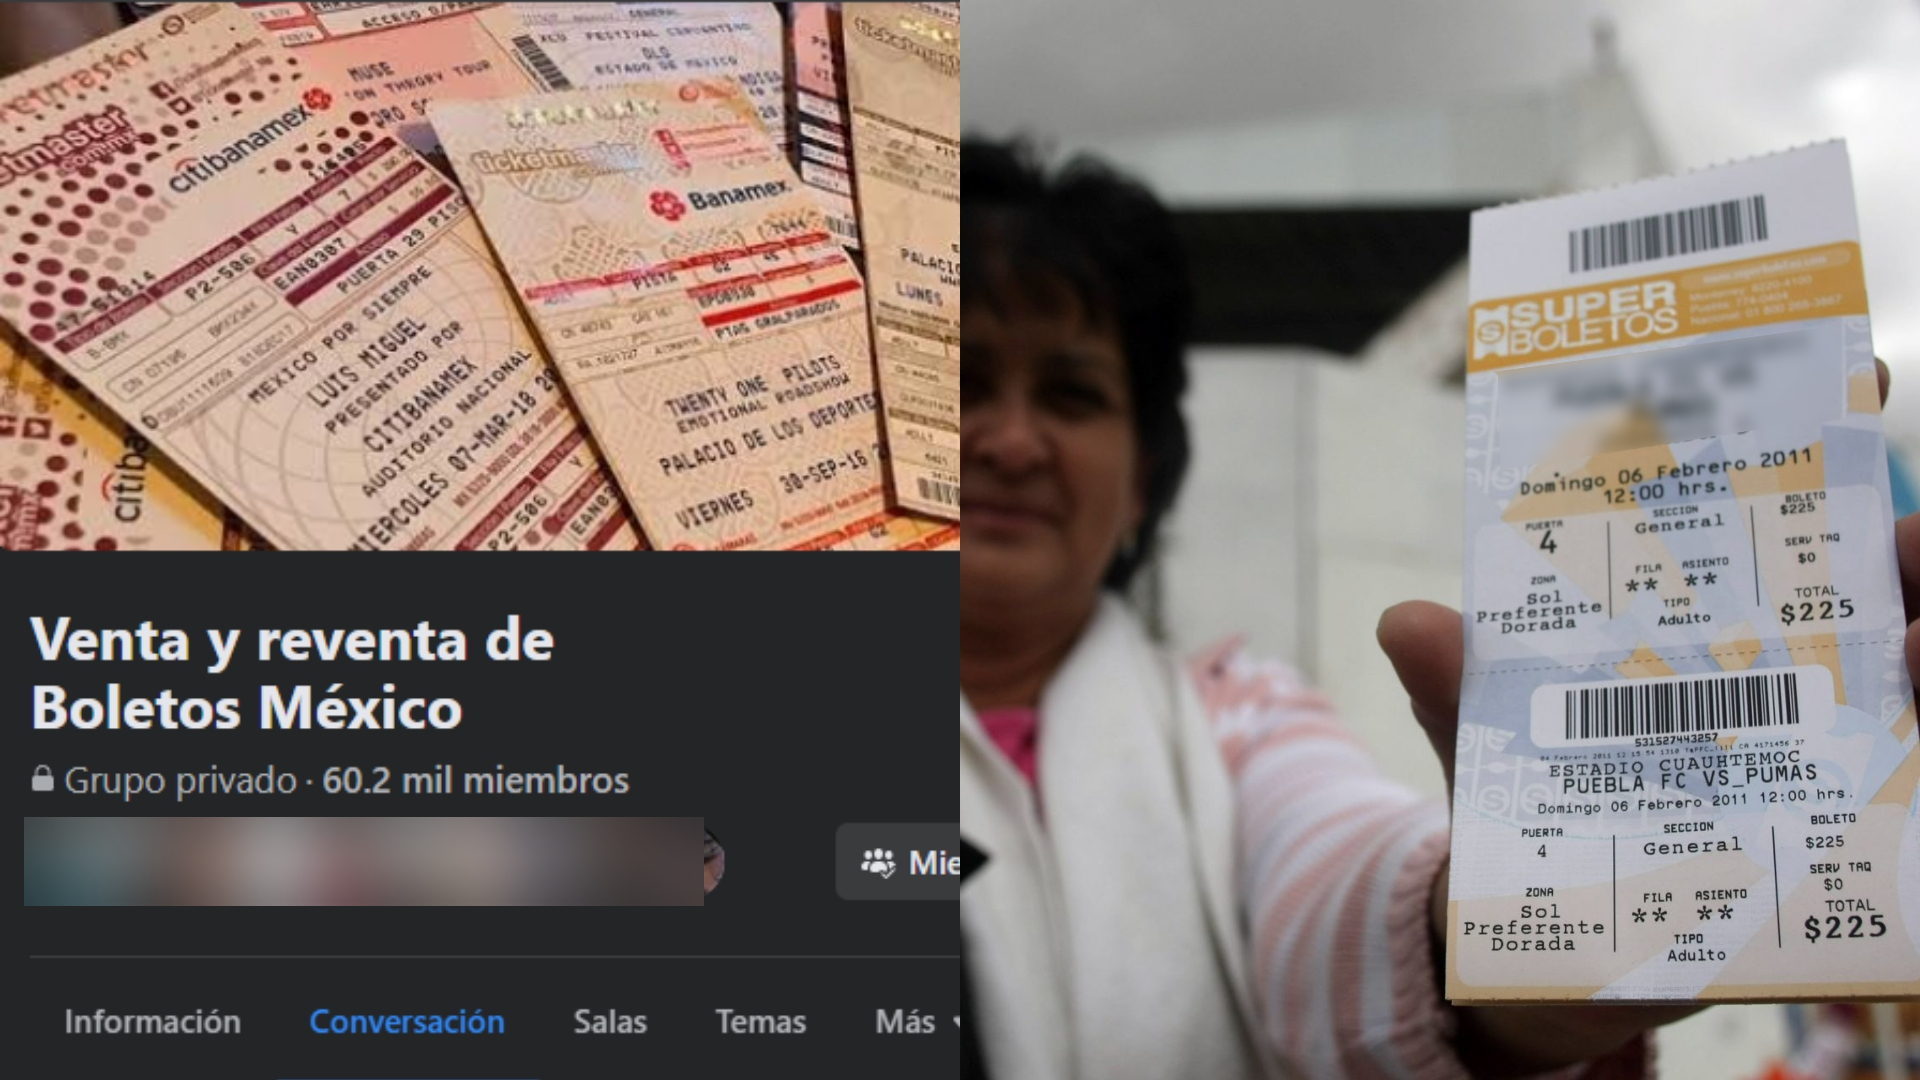 La reventa de boletos en México ha crecido a través de las redes sociales (Foto: Facebook / Cuartoscuro)